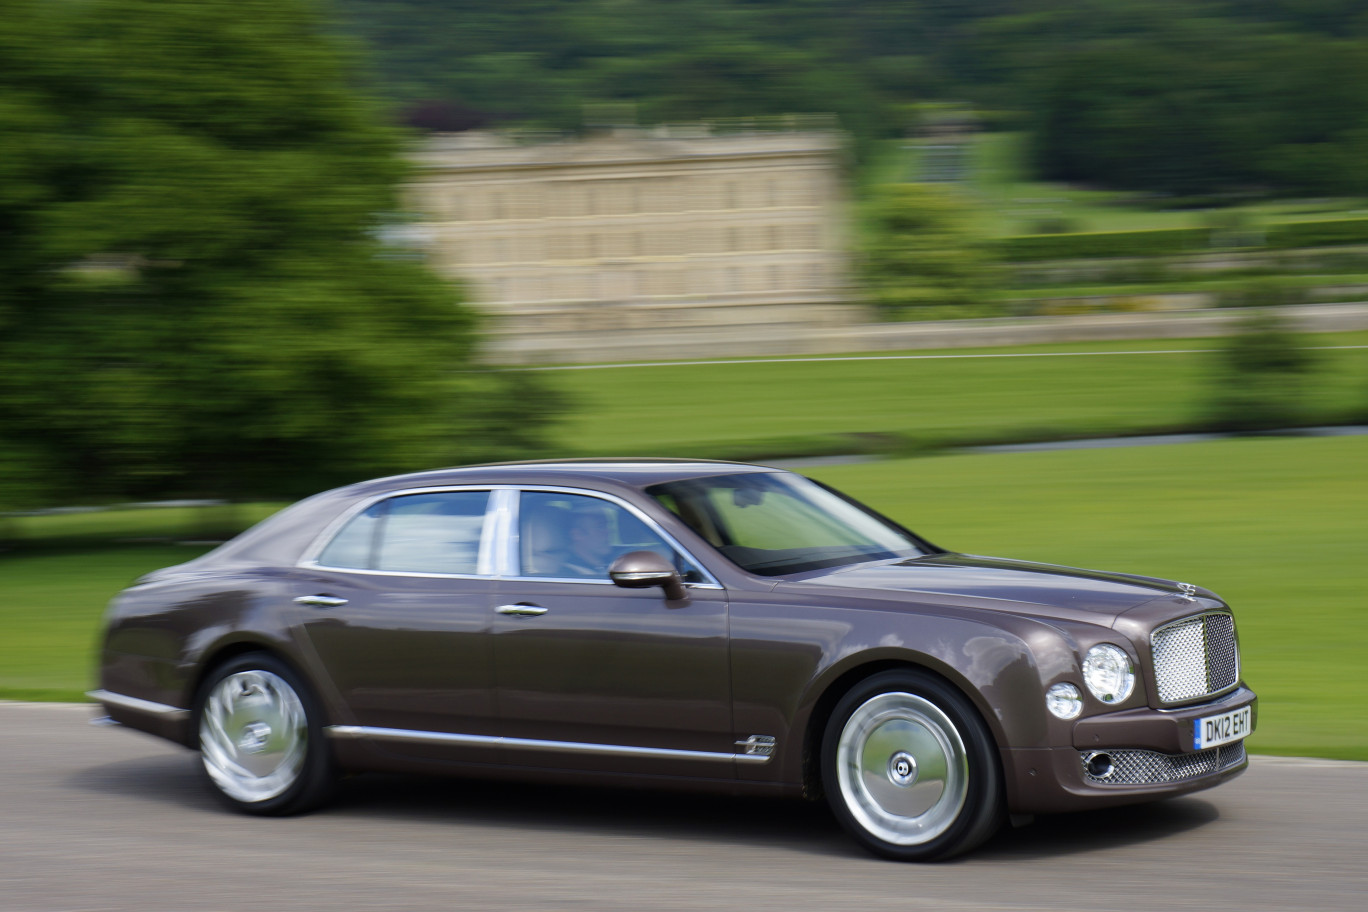 Coup de cœur particulier pour la Bentley Mulsanne, véritable palace roulant, la voiture propose des équipements dignes des plus grands hôtels. A bord, la qualité des matériaux se voit du premier coup d’œil, le confort et exceptionnel. On a le droit de rêver… 